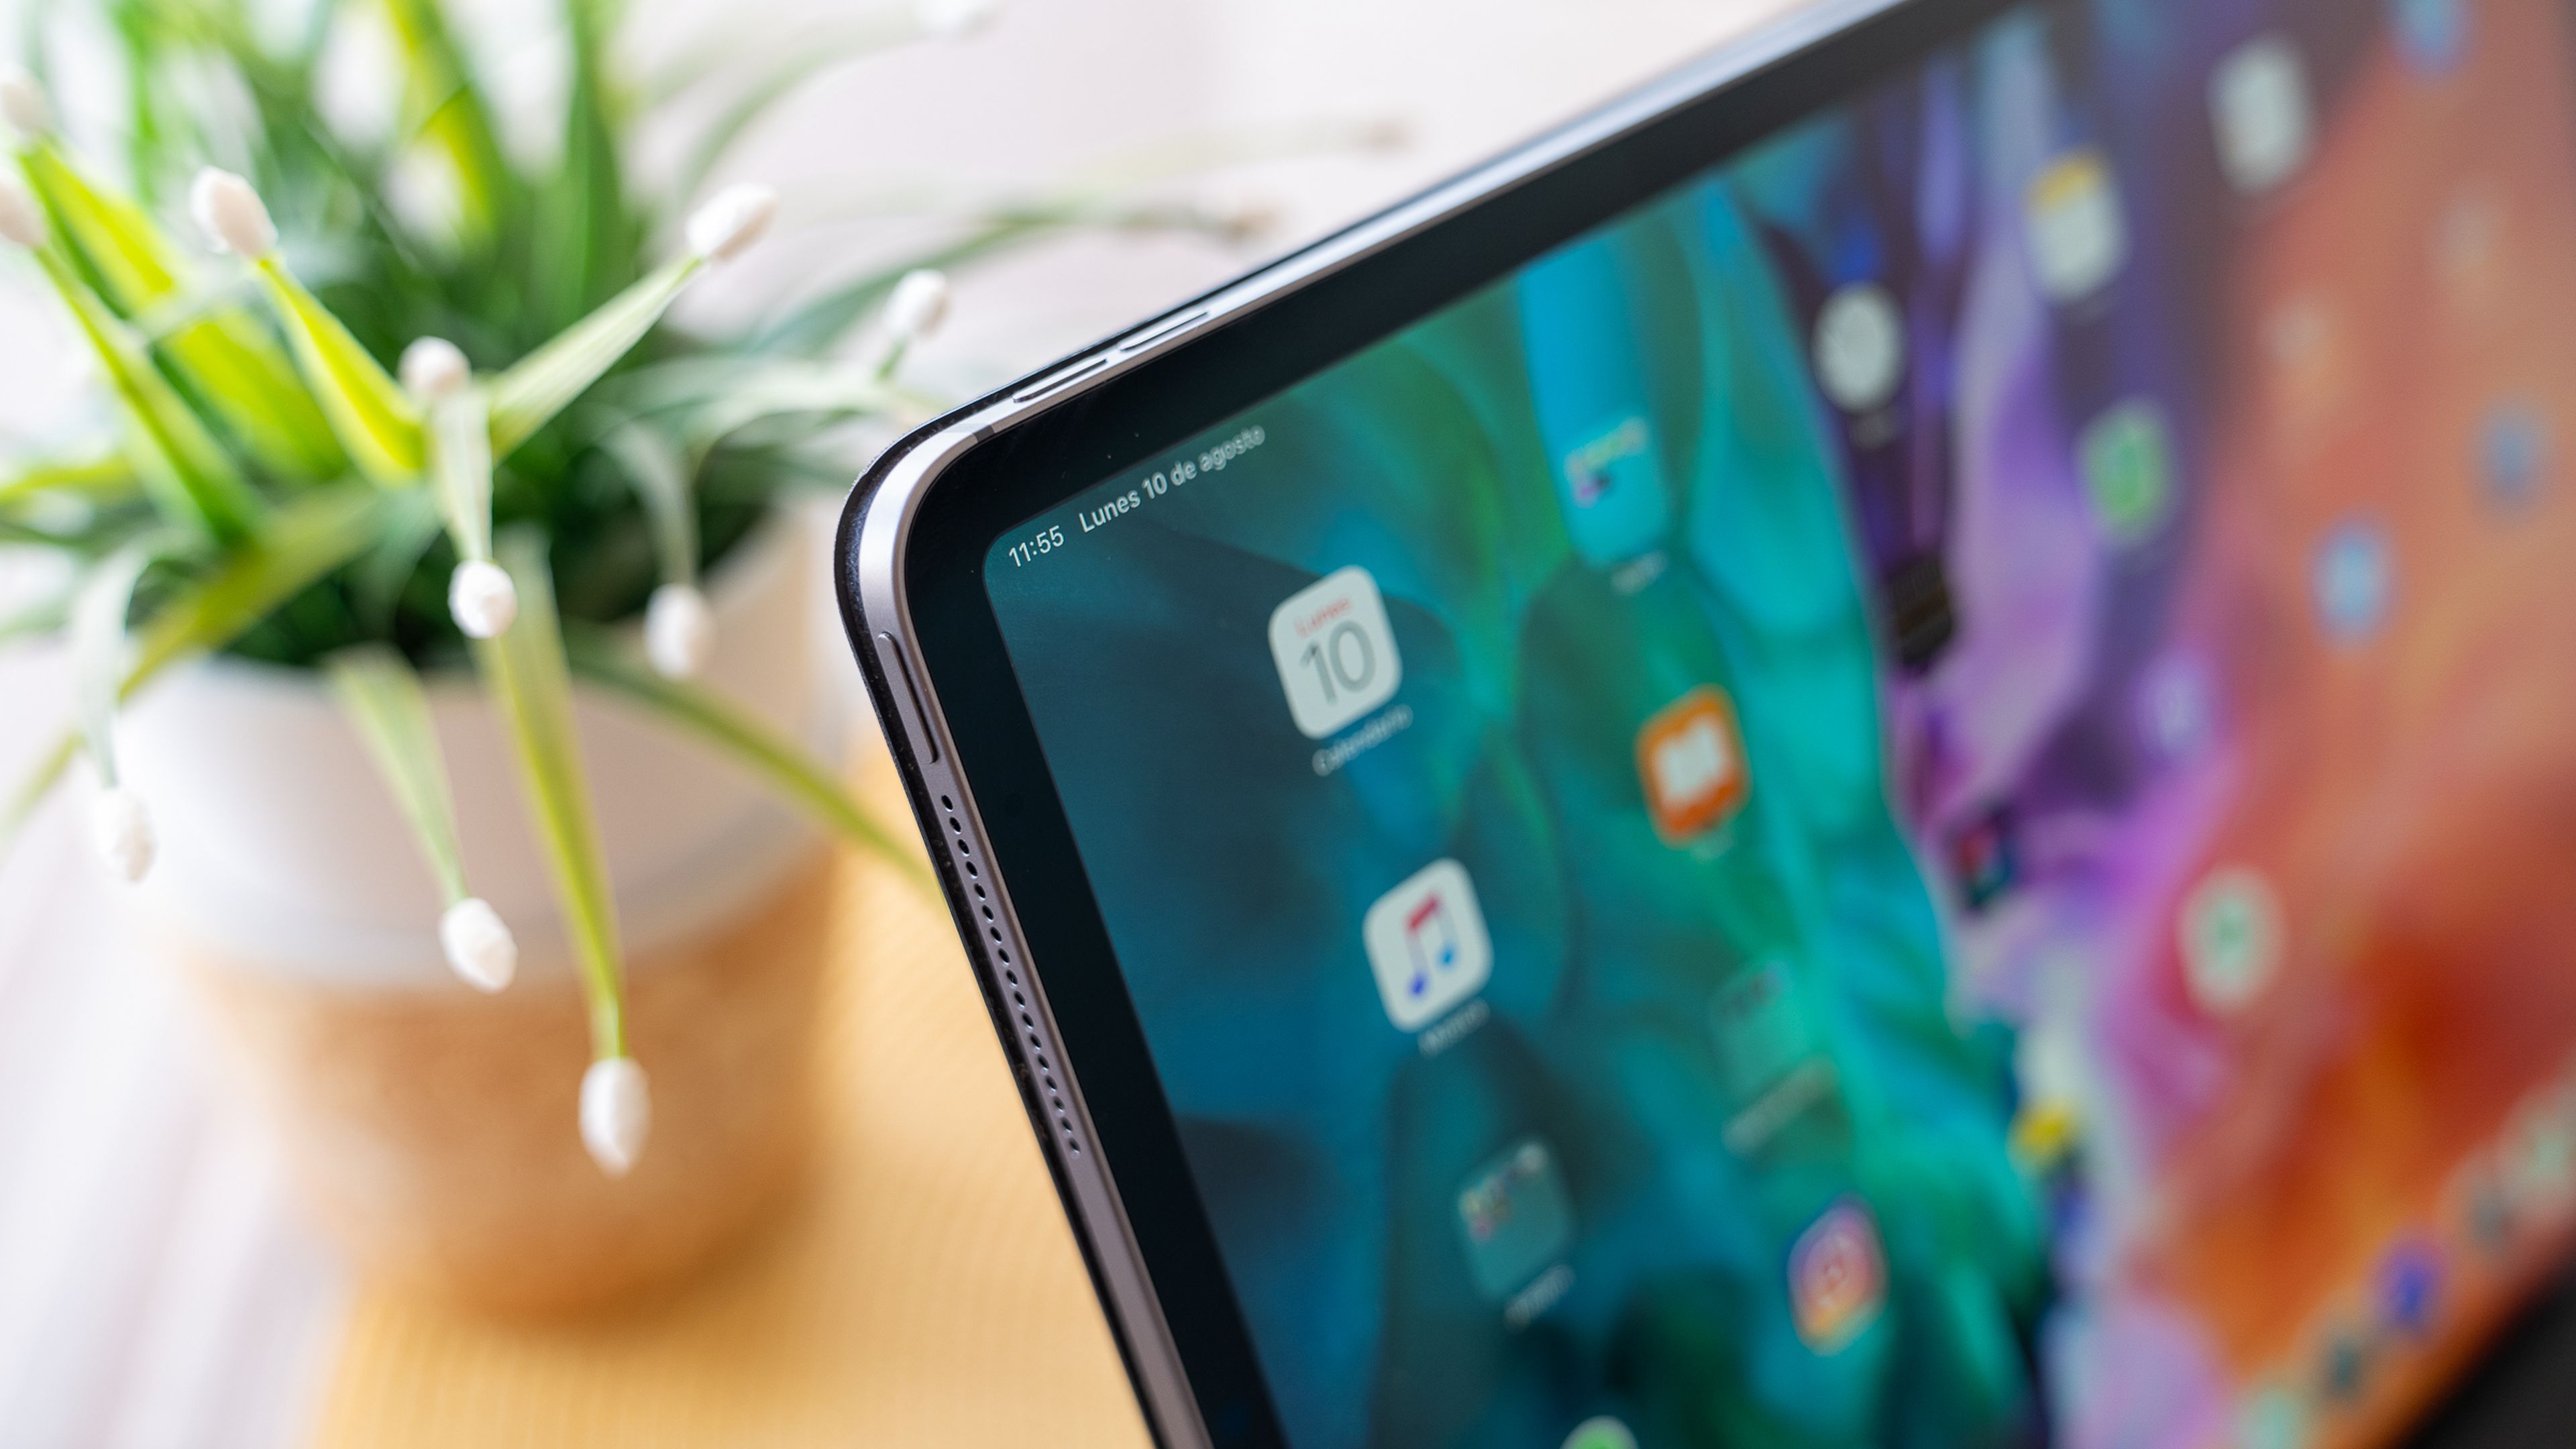 Apple iPad Pro de 2020, análisis y opinión